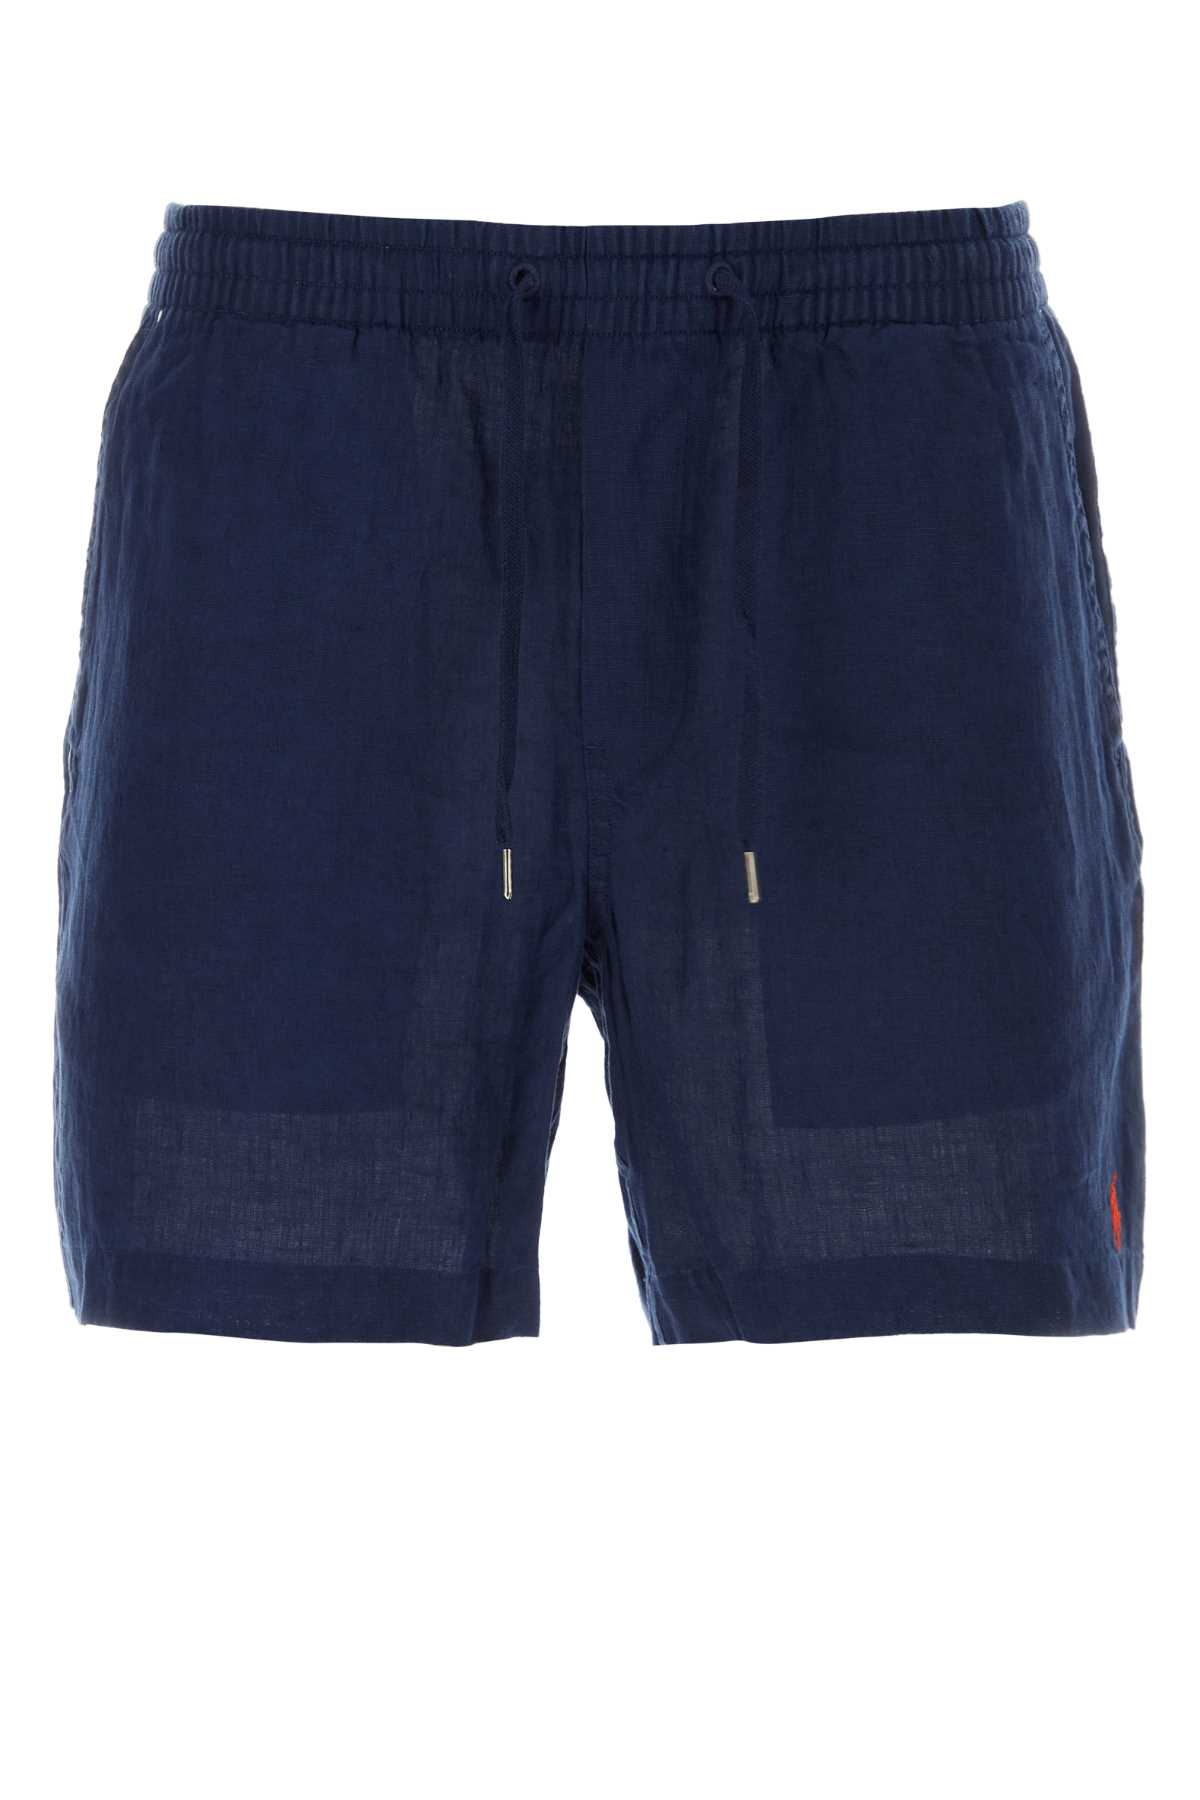 Navy Blue Linen Bermuda Shorts